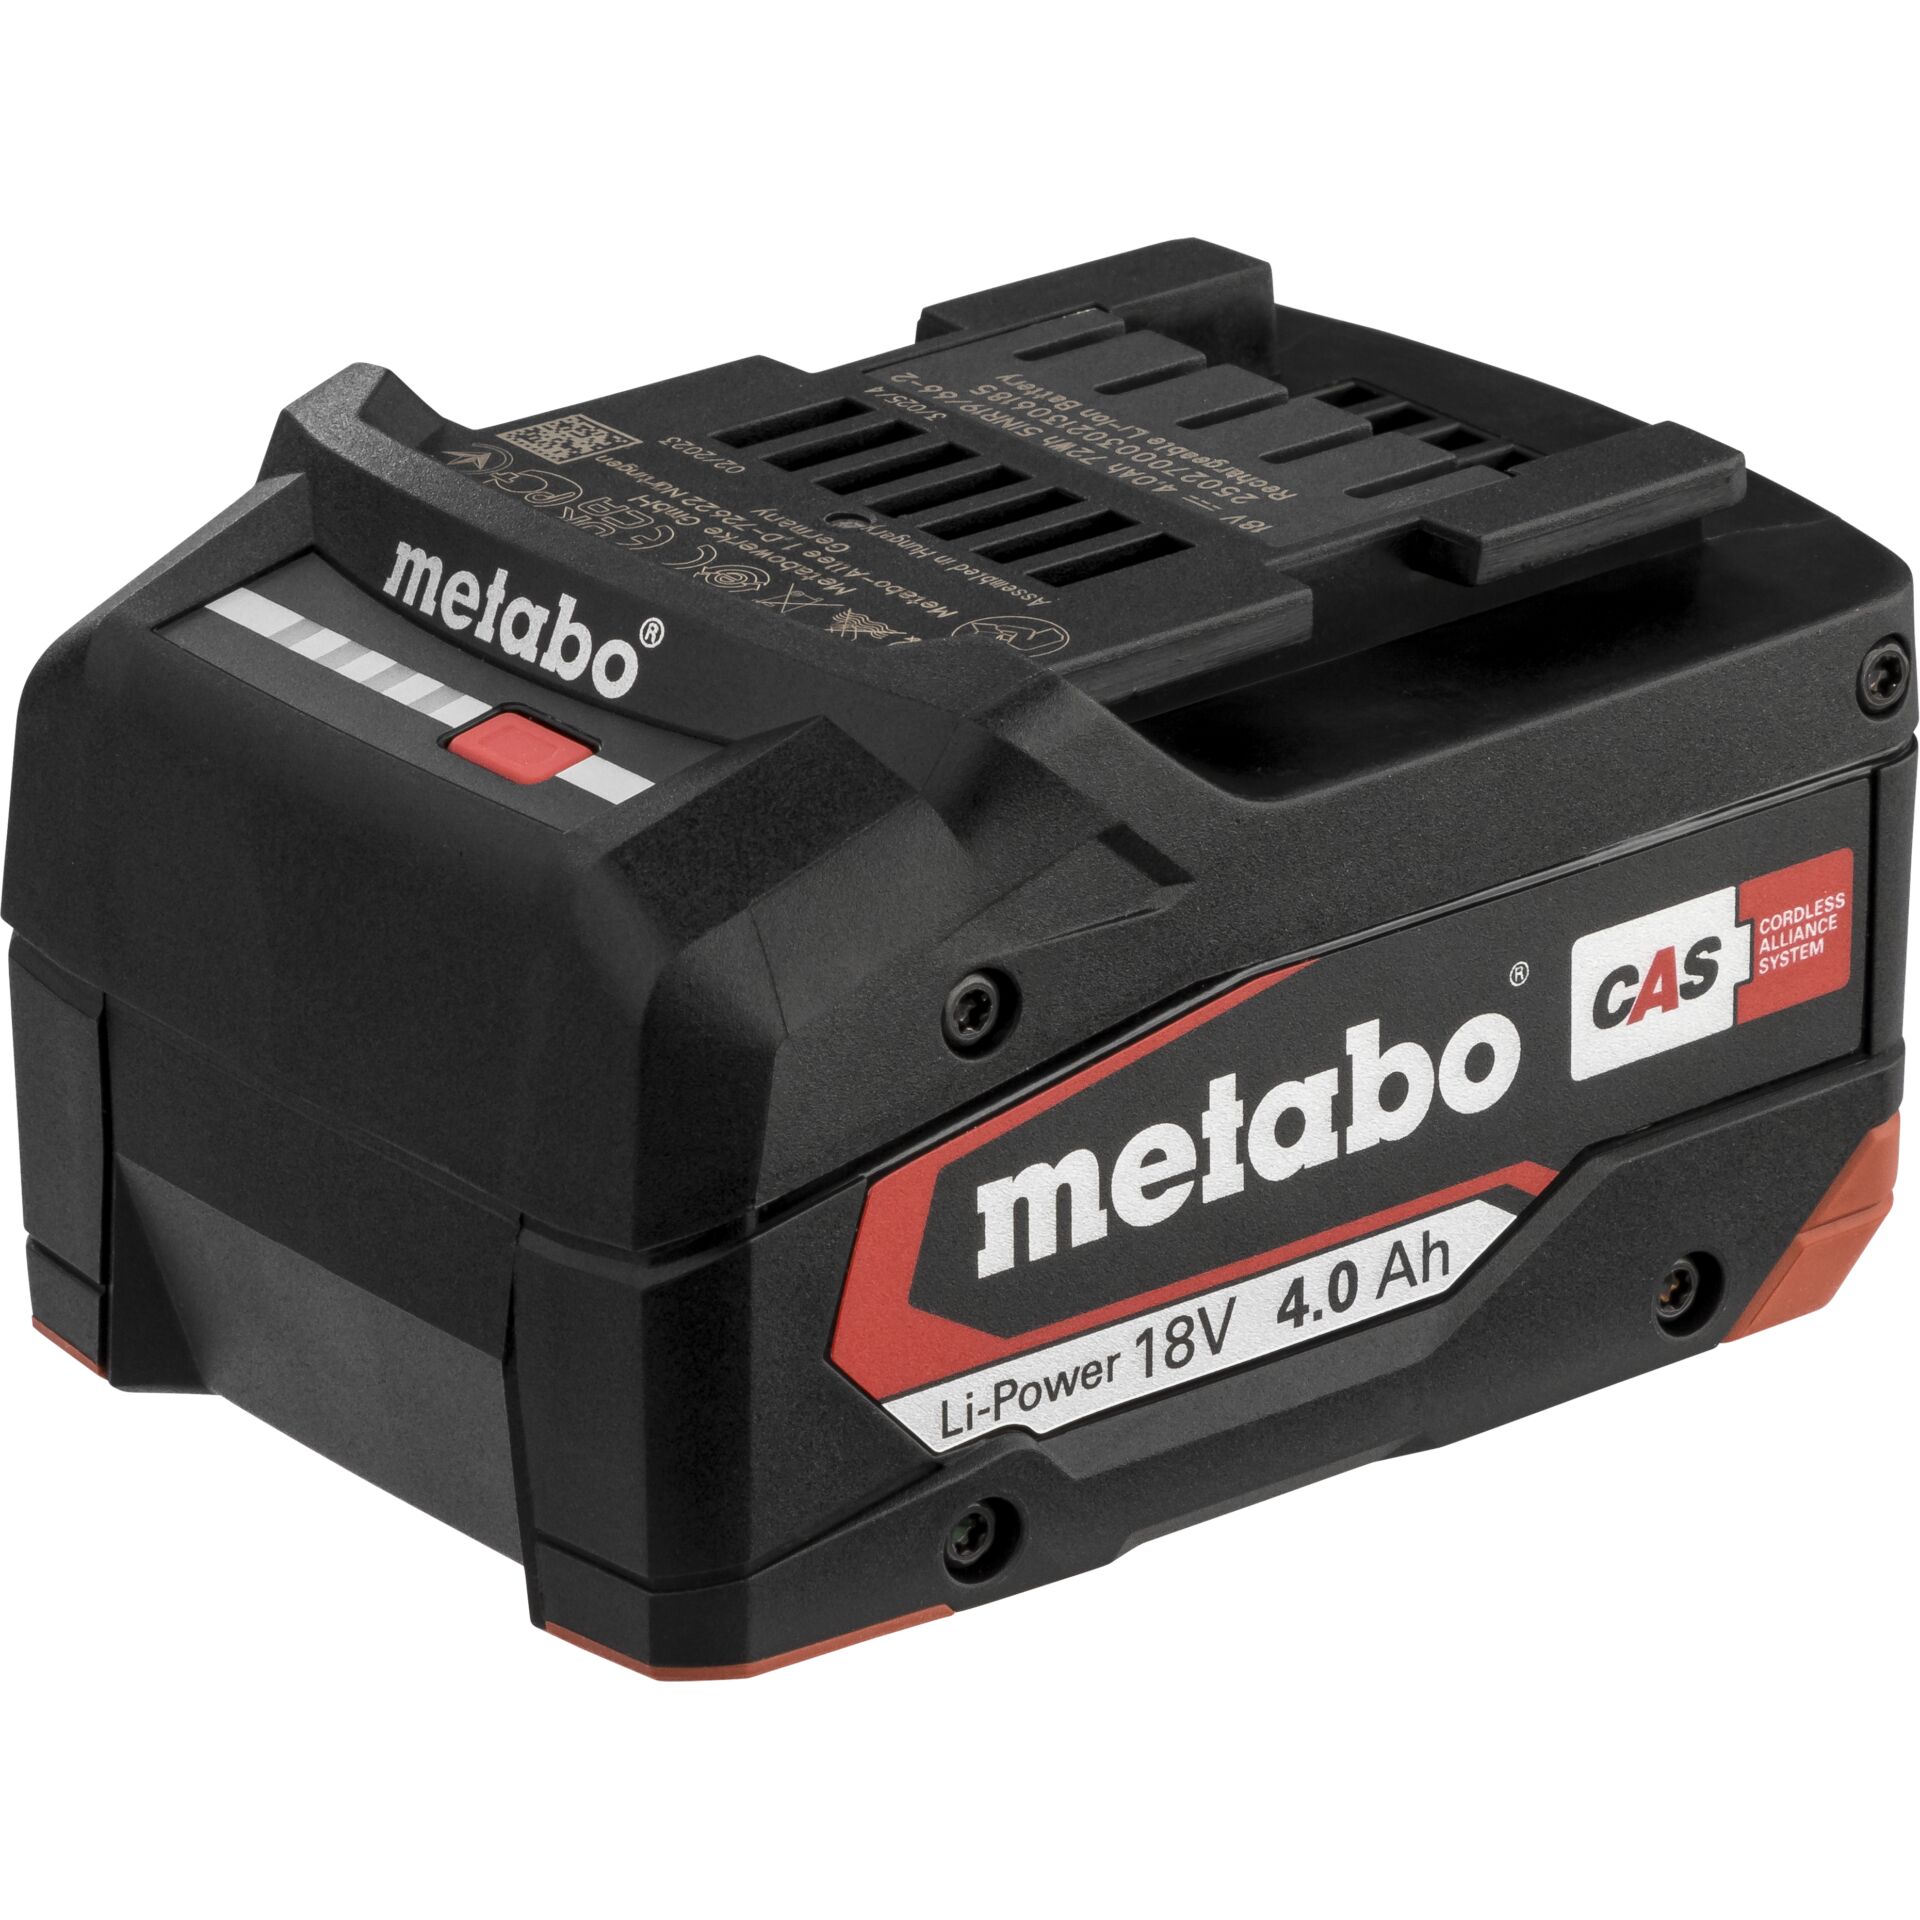 Metabo 625027000 Akku/Ladegerät für Elektrowerkzeug